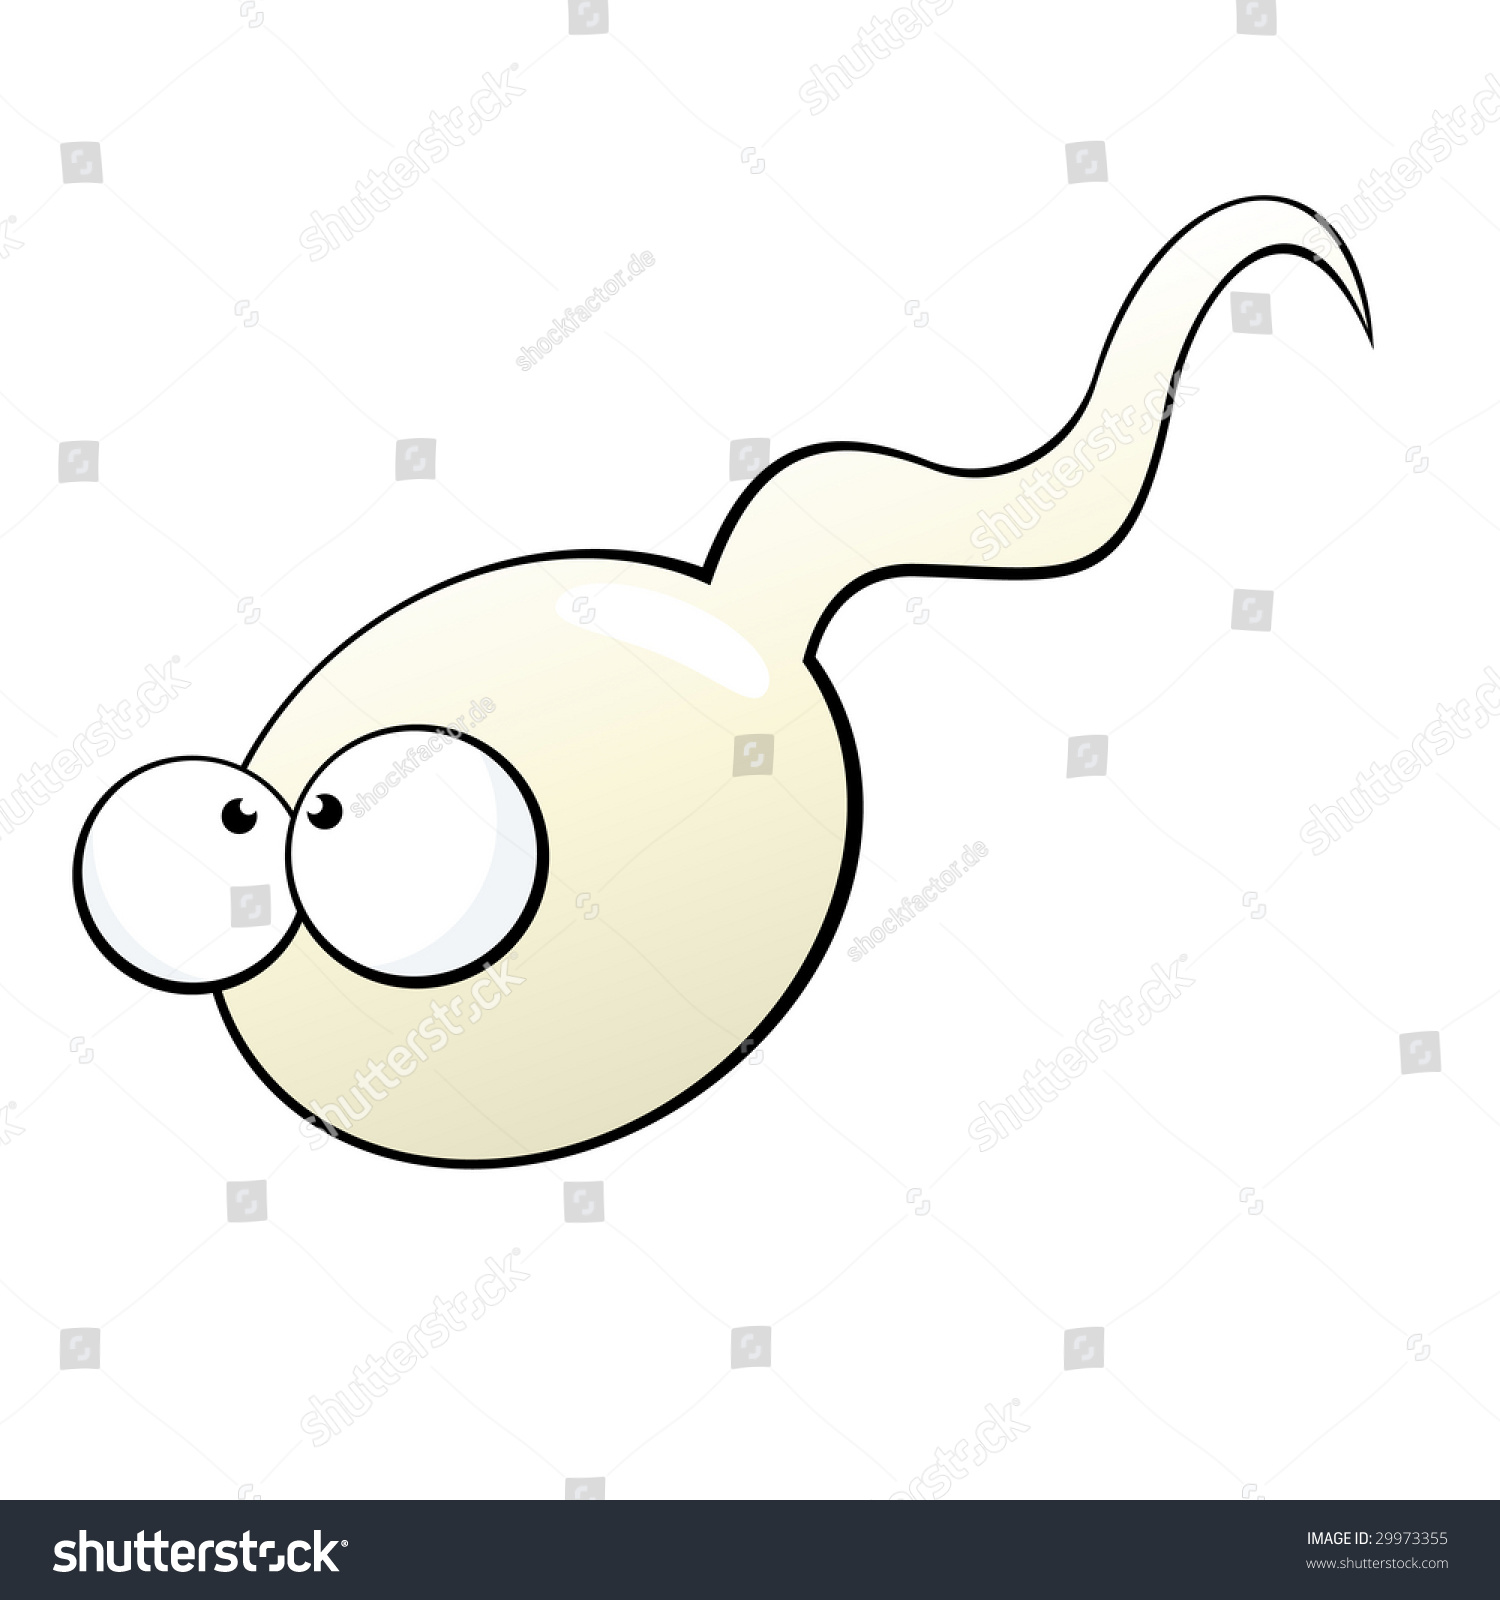 Funny Cartoon Sperm Stock Vector 29973355 Shutterstock 6524